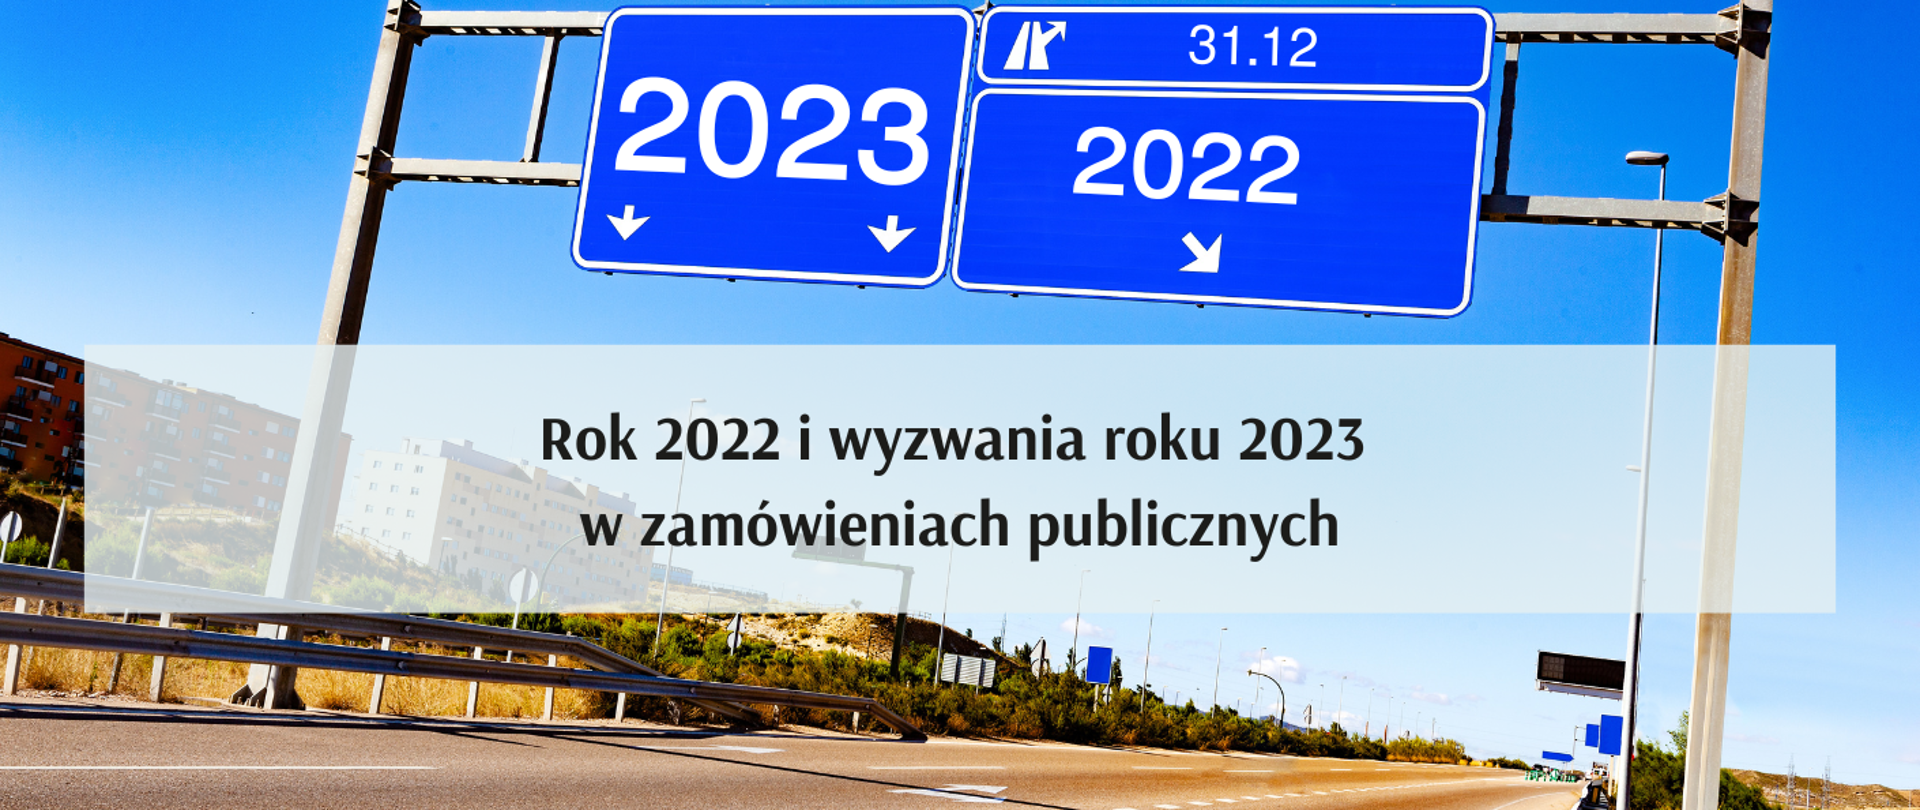 Rok 2022 i wyzwania roku 2023 w zamówieniach publicznych